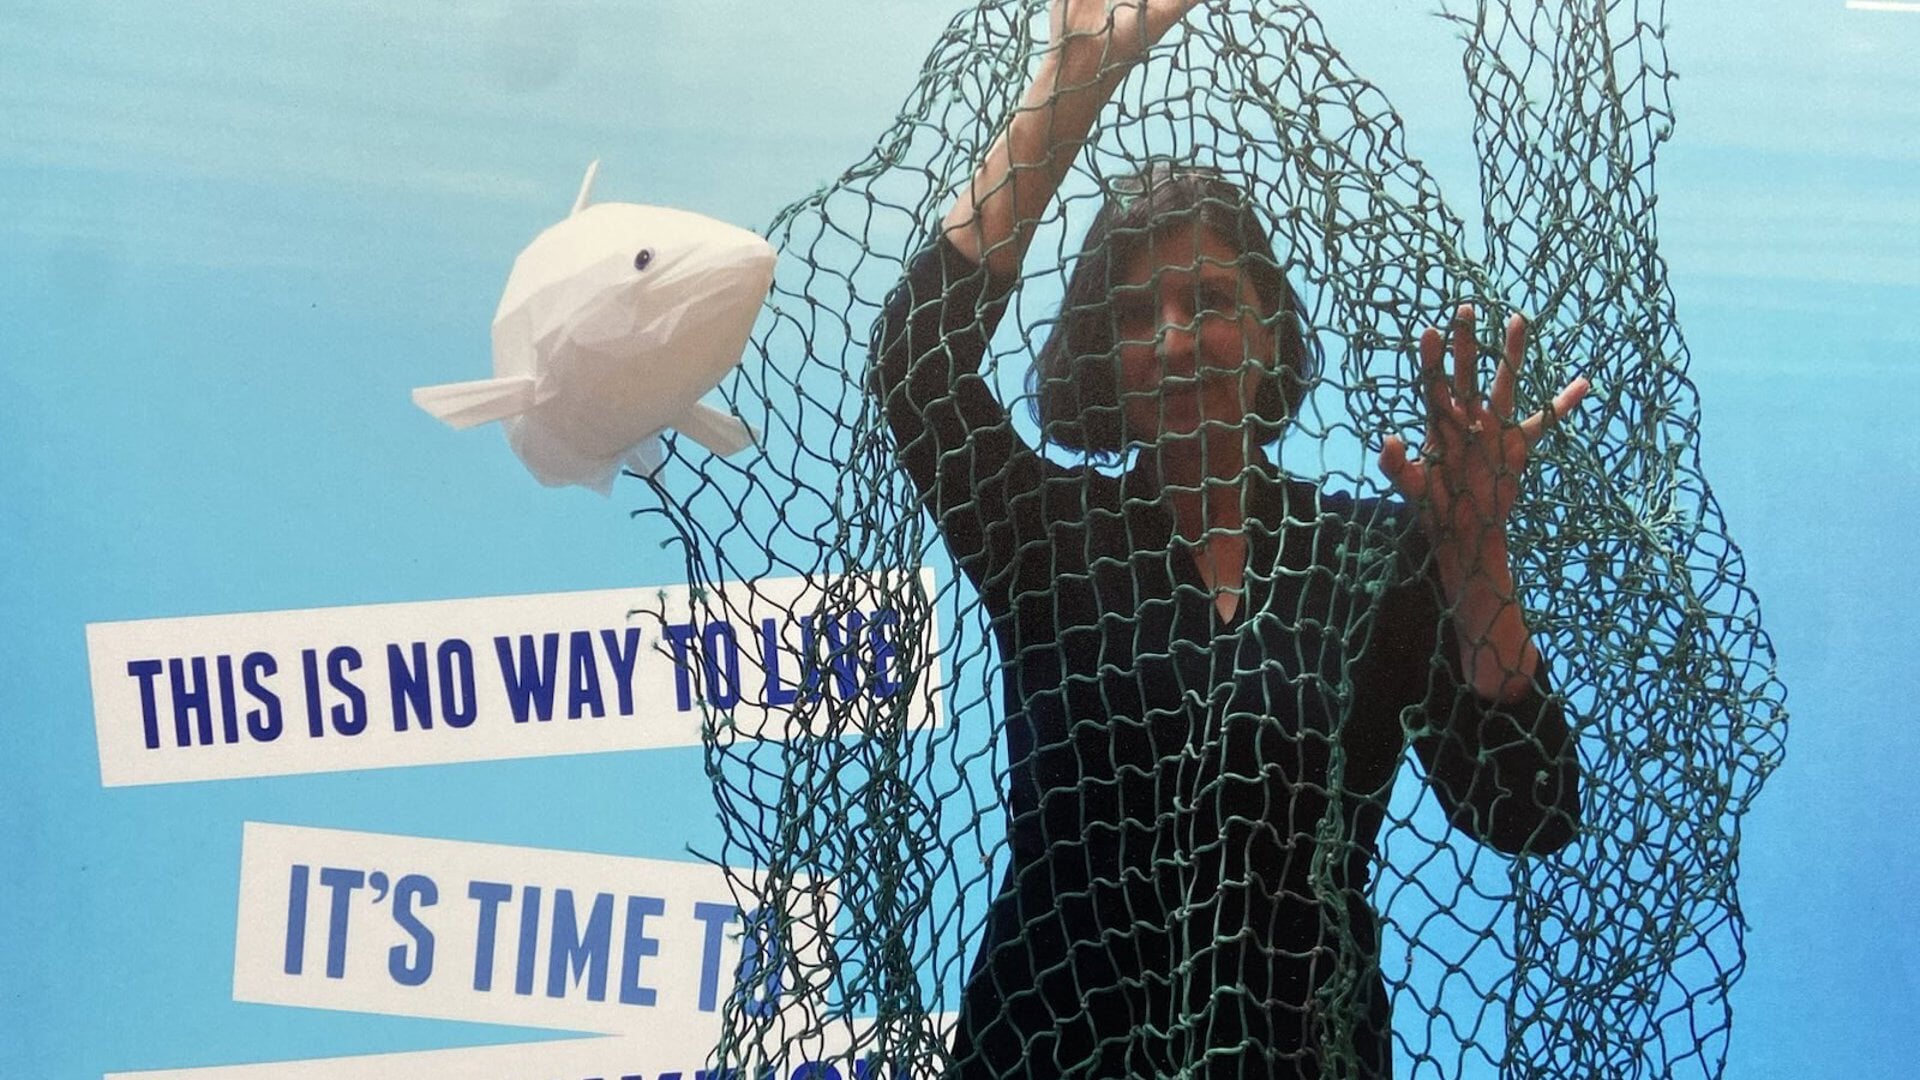 De visserij, waarin volgens Anja Hazekamp 'de vis de rekening betaalt', is een belangrijk thema tijdens de Europese verkiezingen. 